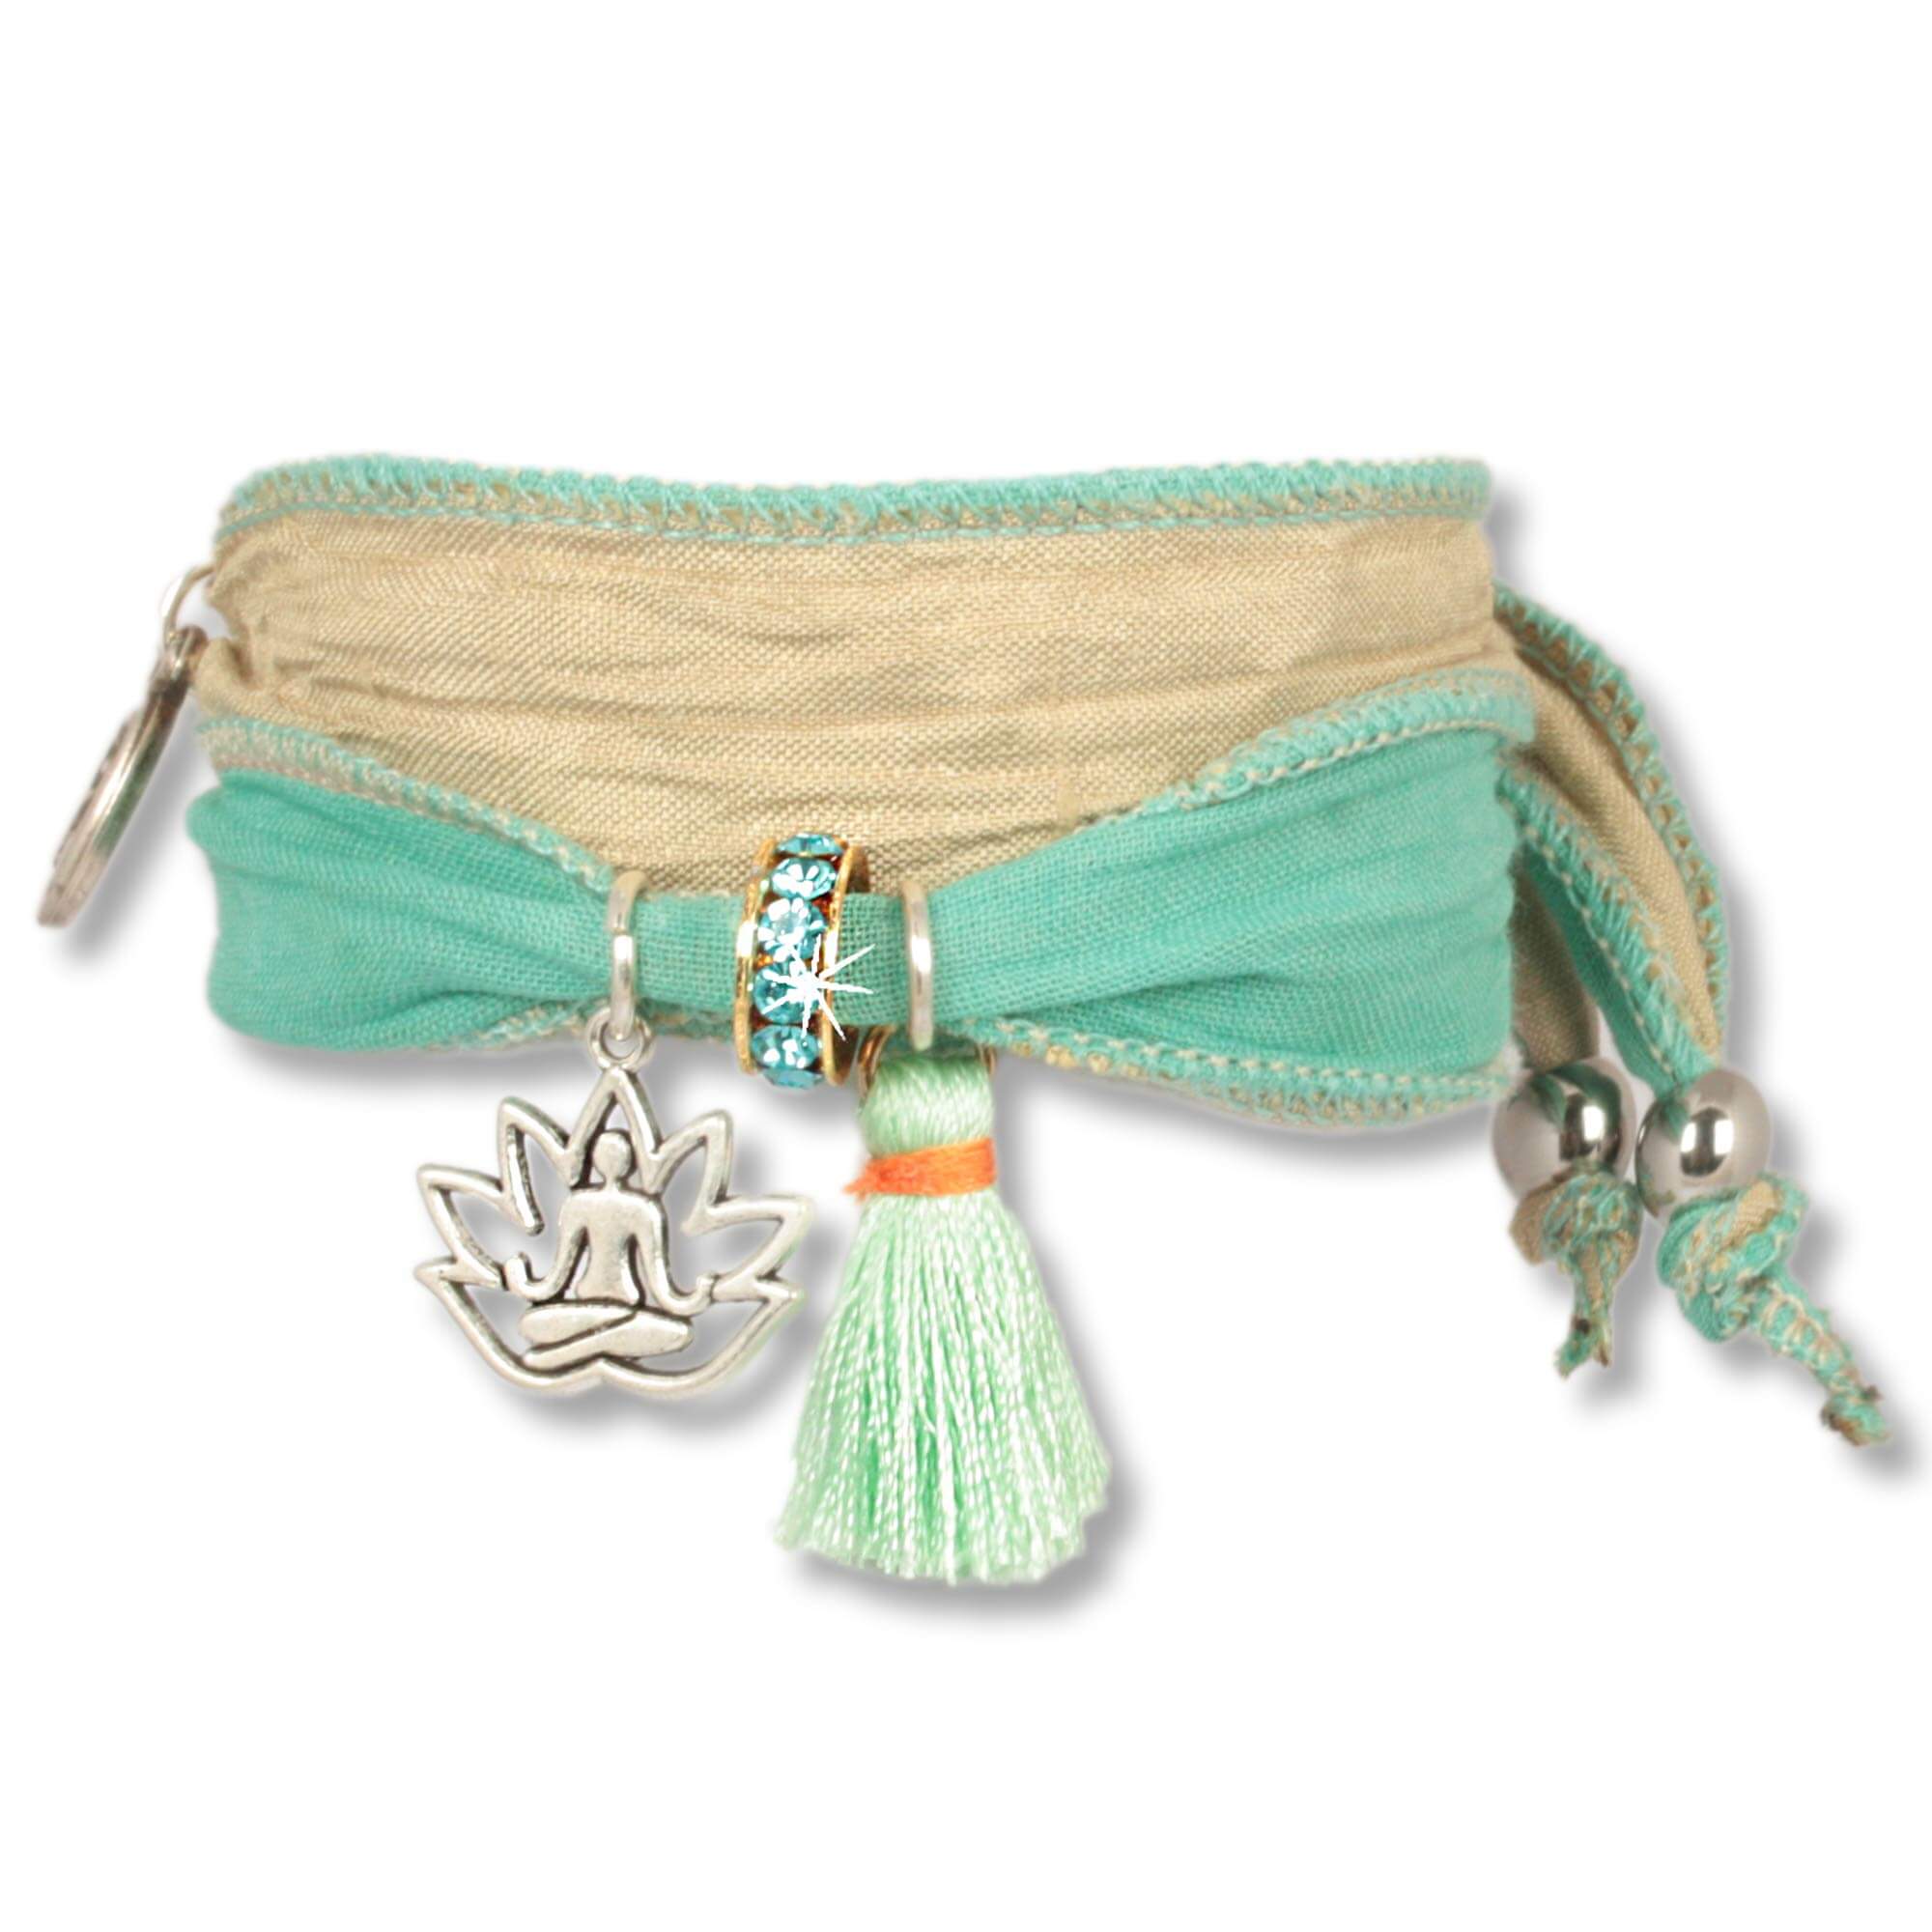 Handgefertigtes Stoffarmband aus Saris und Seidenstoffen in mint grün und Naturfarben. Verziert mit einer metallenen Lotusblume, die einen meditierenden Buddha zeigt, einer mintgrünen Seidenquaste, einem Rondell besetzt mit tschechischen Kristallen. Anísc